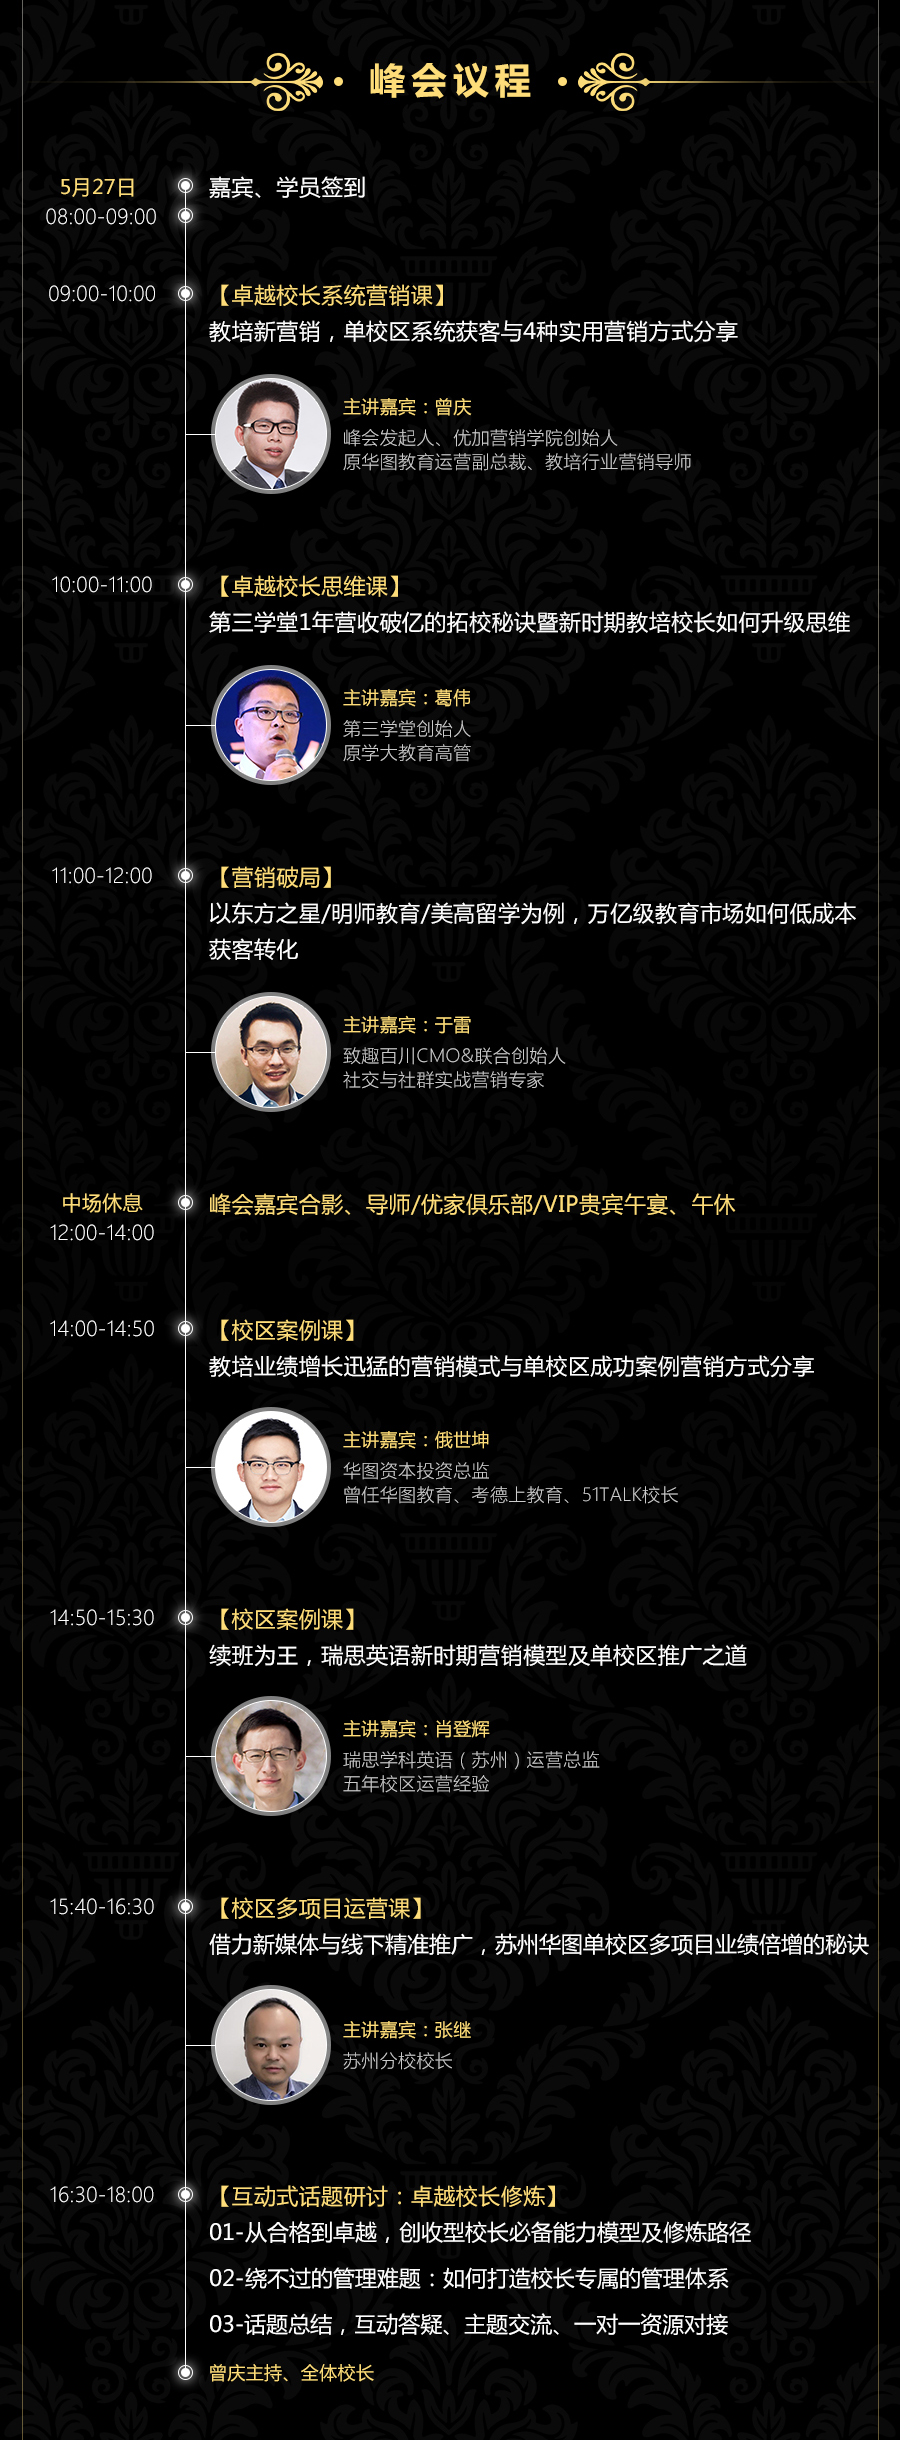 2018中国教培互联网营销主题峰会（5月27日苏州站）